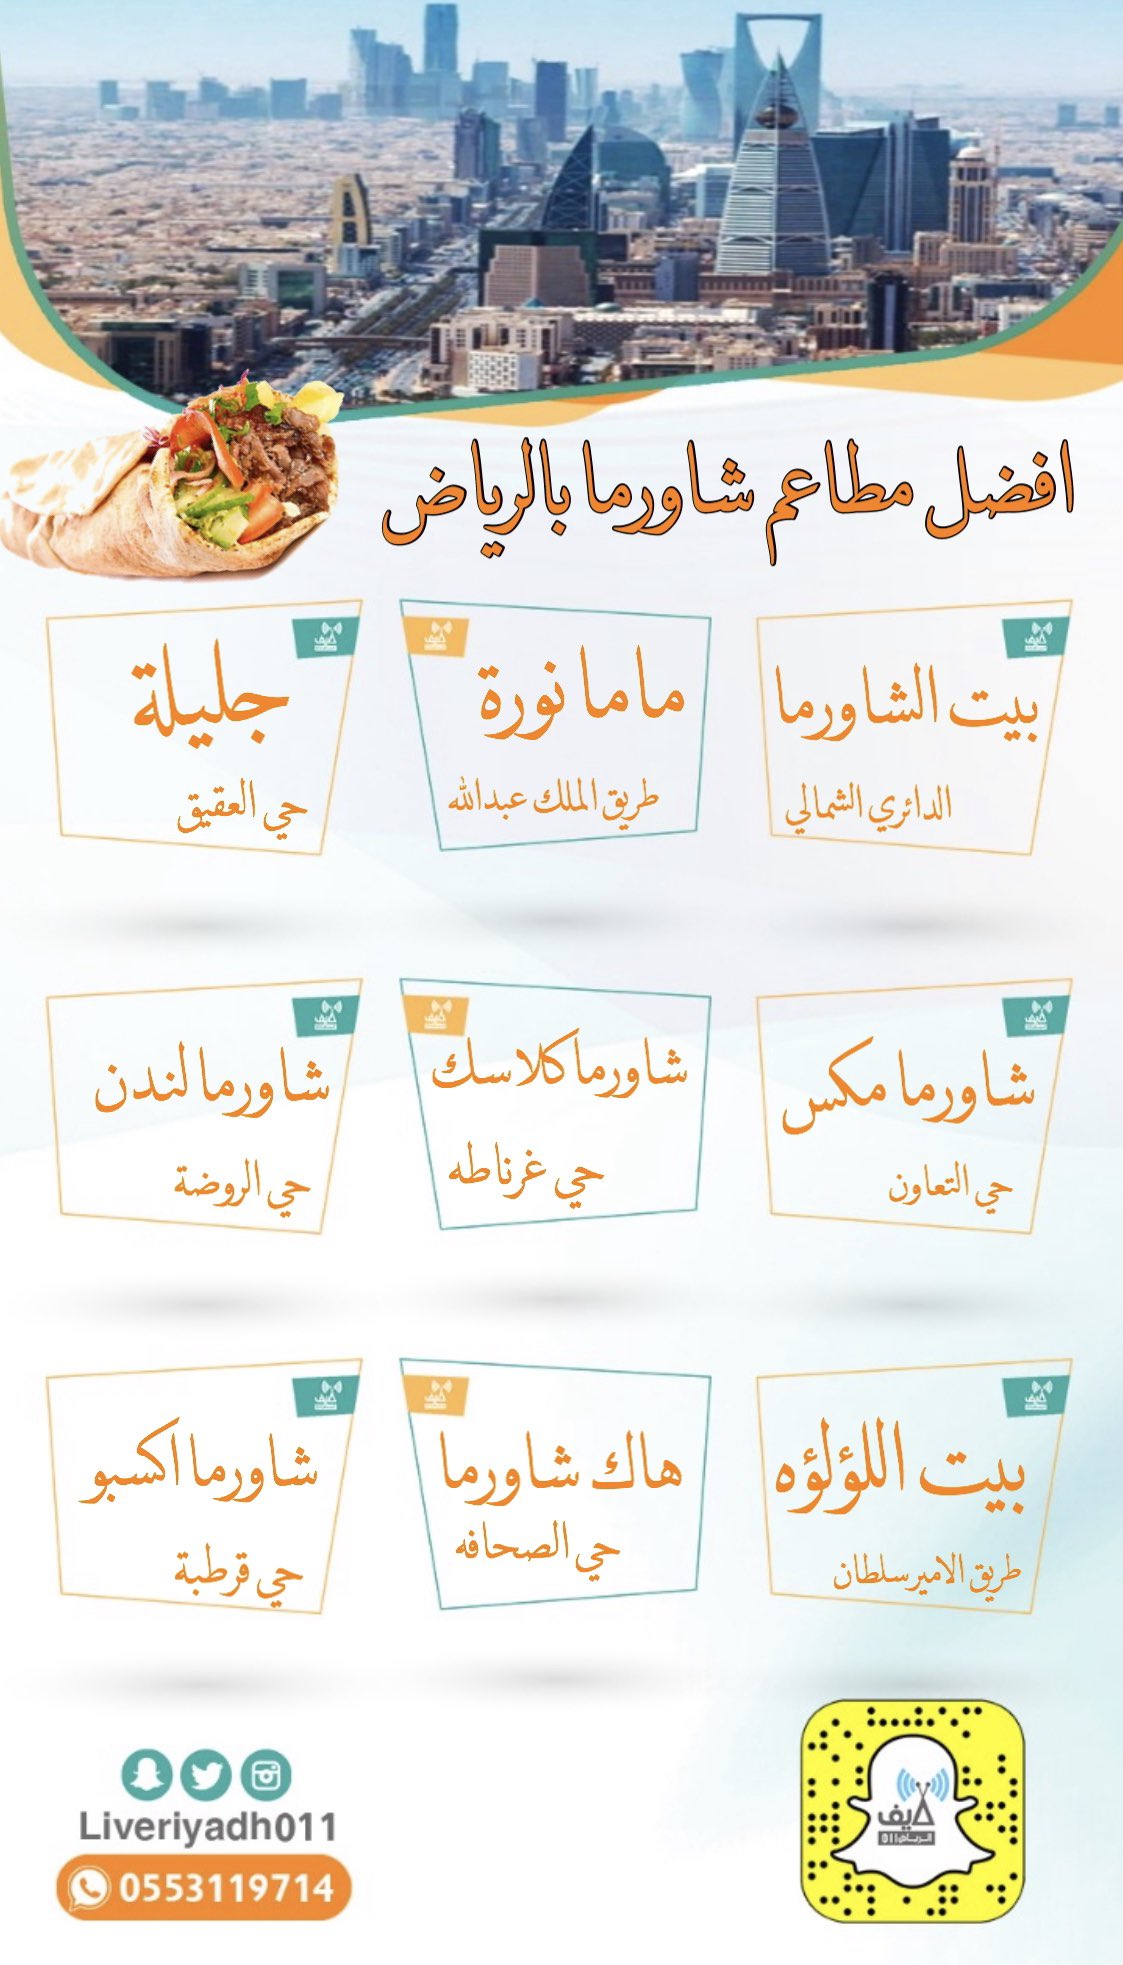 اللؤلؤة الرياض مطعم بيت اللؤلؤة